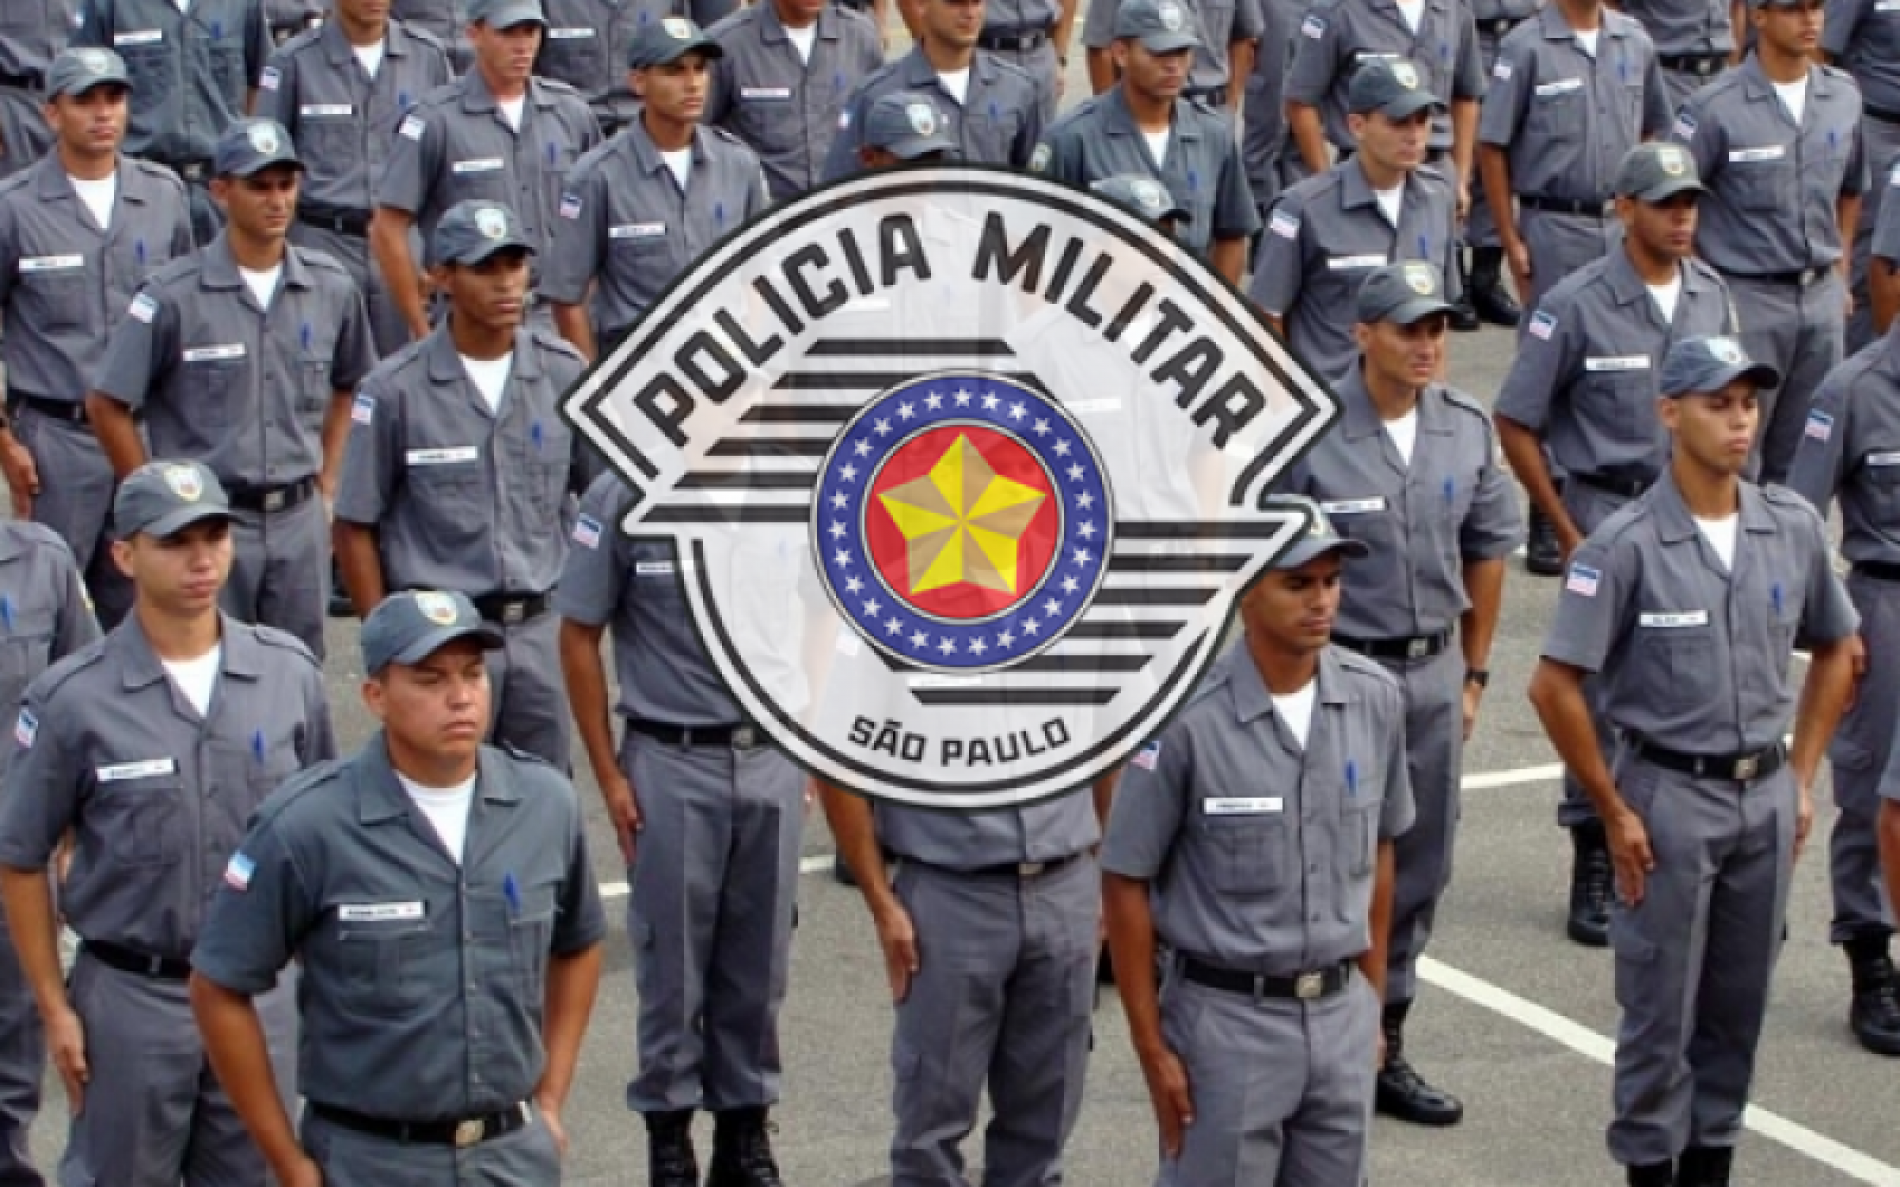 POLÍCIA MILITAR ABRE INSCRIÇÕES PARA CONCURSO PÚBLICO